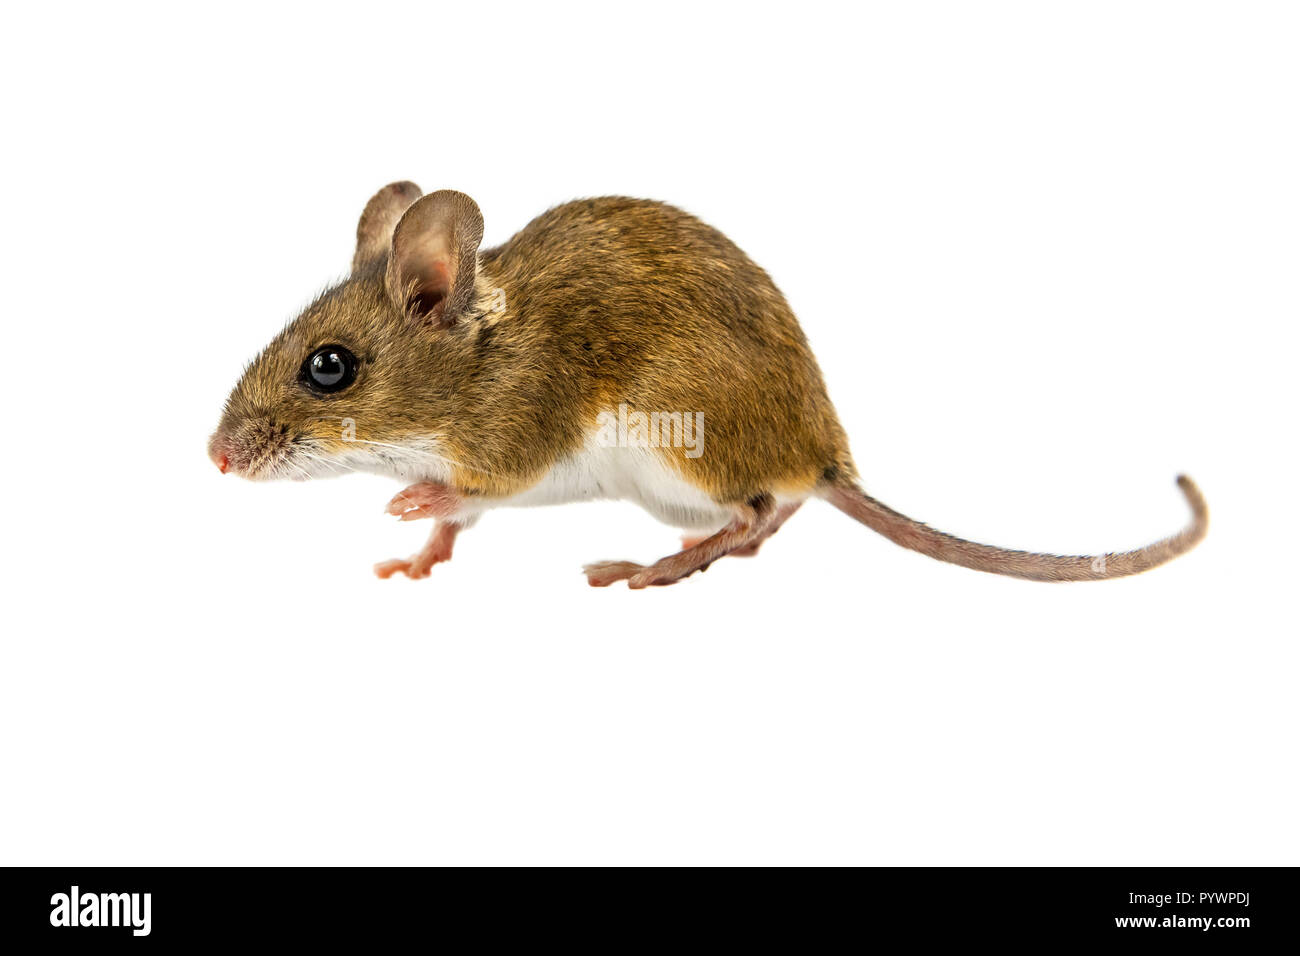 Vue latérale d'une souris en bois (Apodemus sylvaticus) marche sur fond blanc Banque D'Images